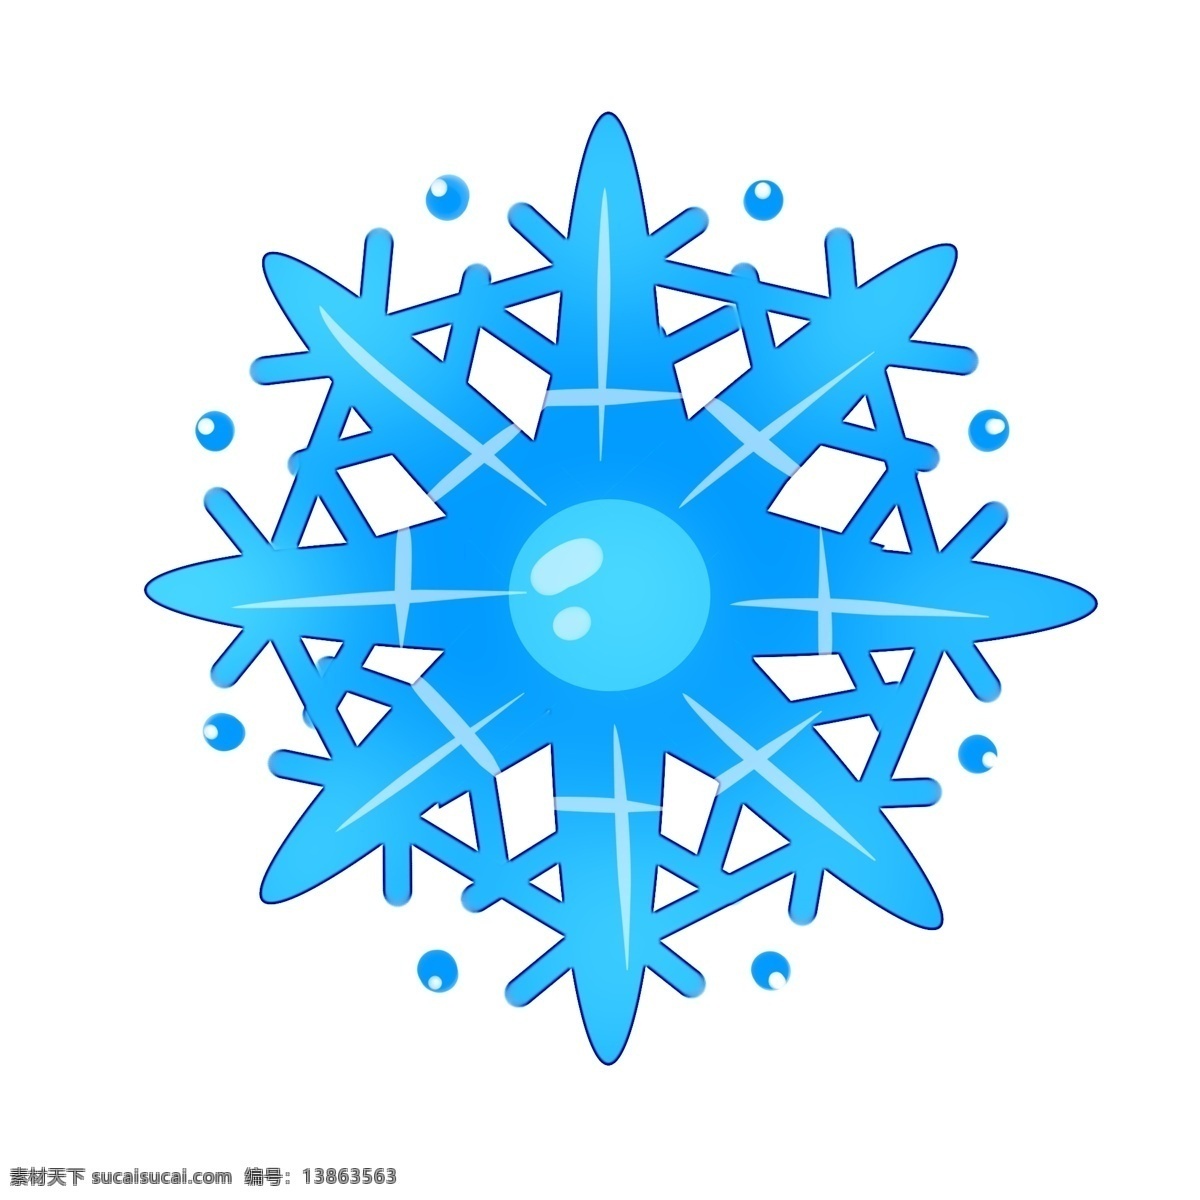 冬日 飘 雪 晶莹 雪花 冬天下雪 雪花的形状 蓝色雪花 晶莹雪花 亮晶晶的雪花 原创雪花图形 萌萌的雪花